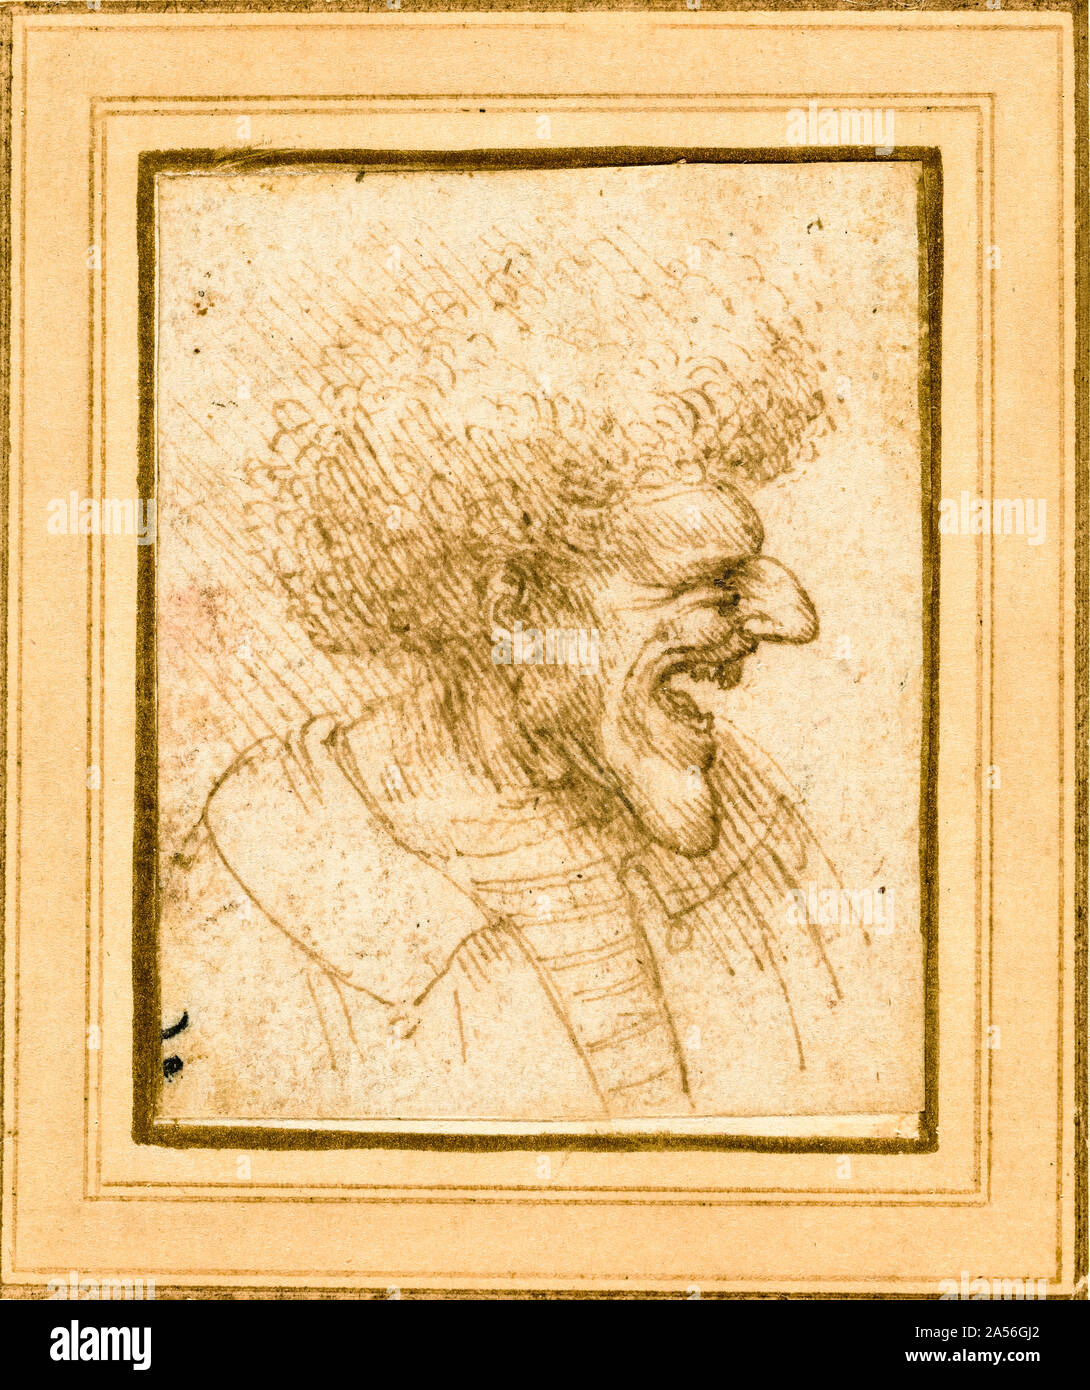 Leonardo Da Vinci, la caricature d'un homme avec des cheveux touffus, dessin, vers 1495 Banque D'Images